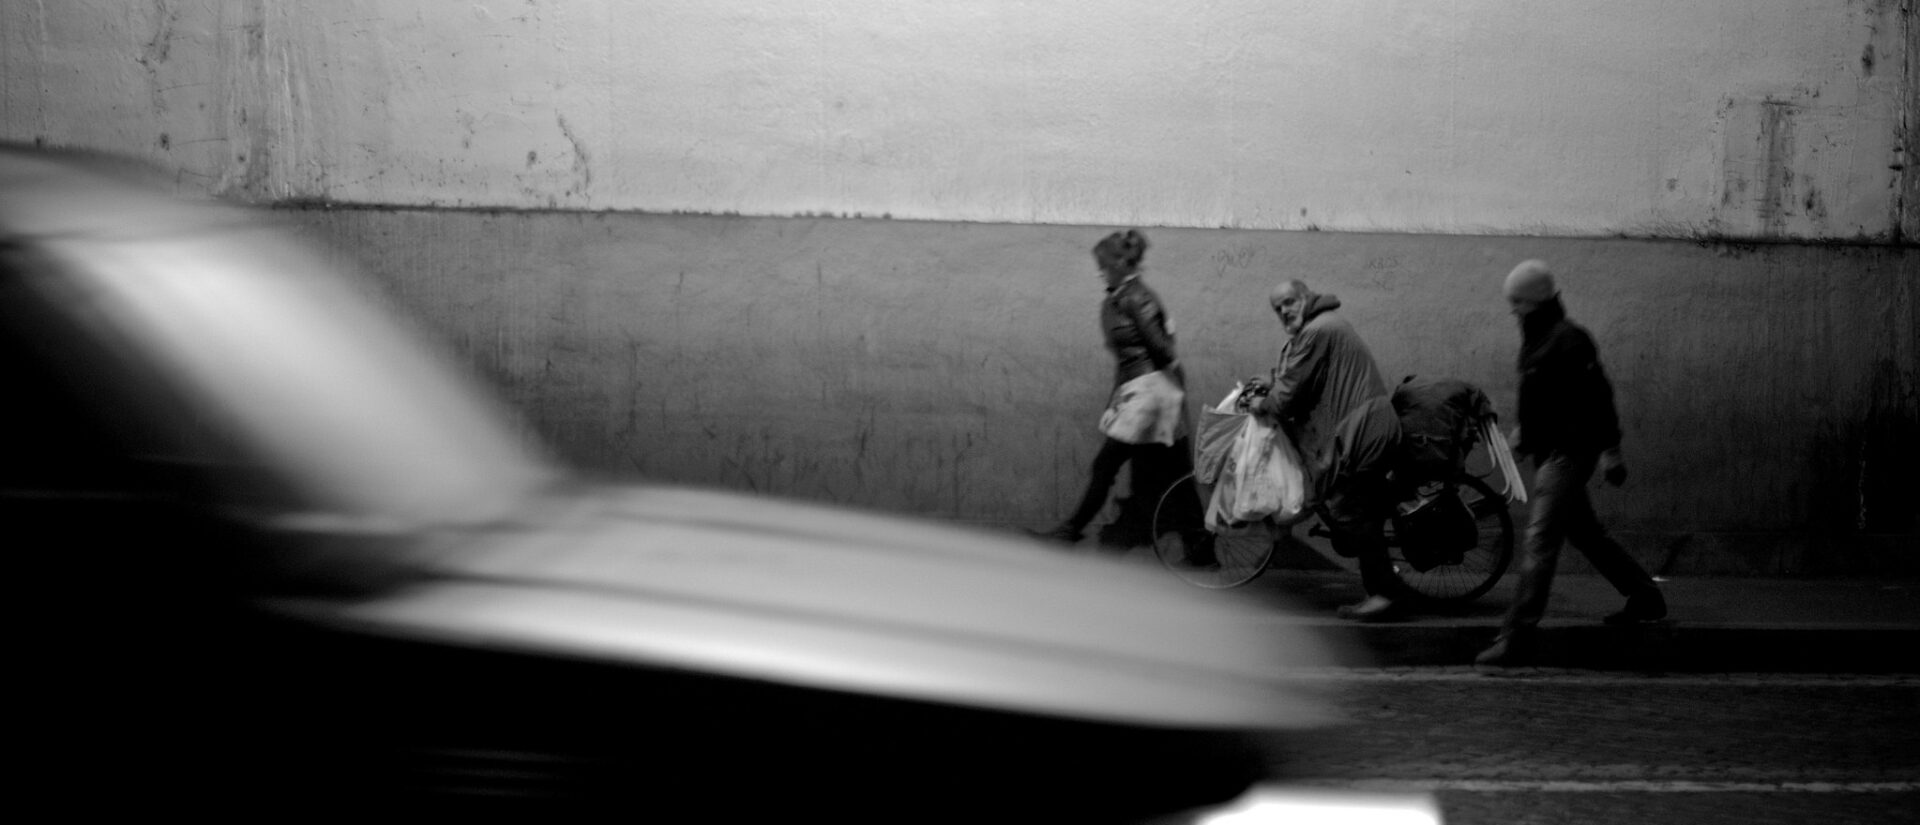 De nombreux sans-abri vivent aux abords du Vatican | photo d'illustration © Santiago S.V./Flickr/CC BY-NC-ND 2.0